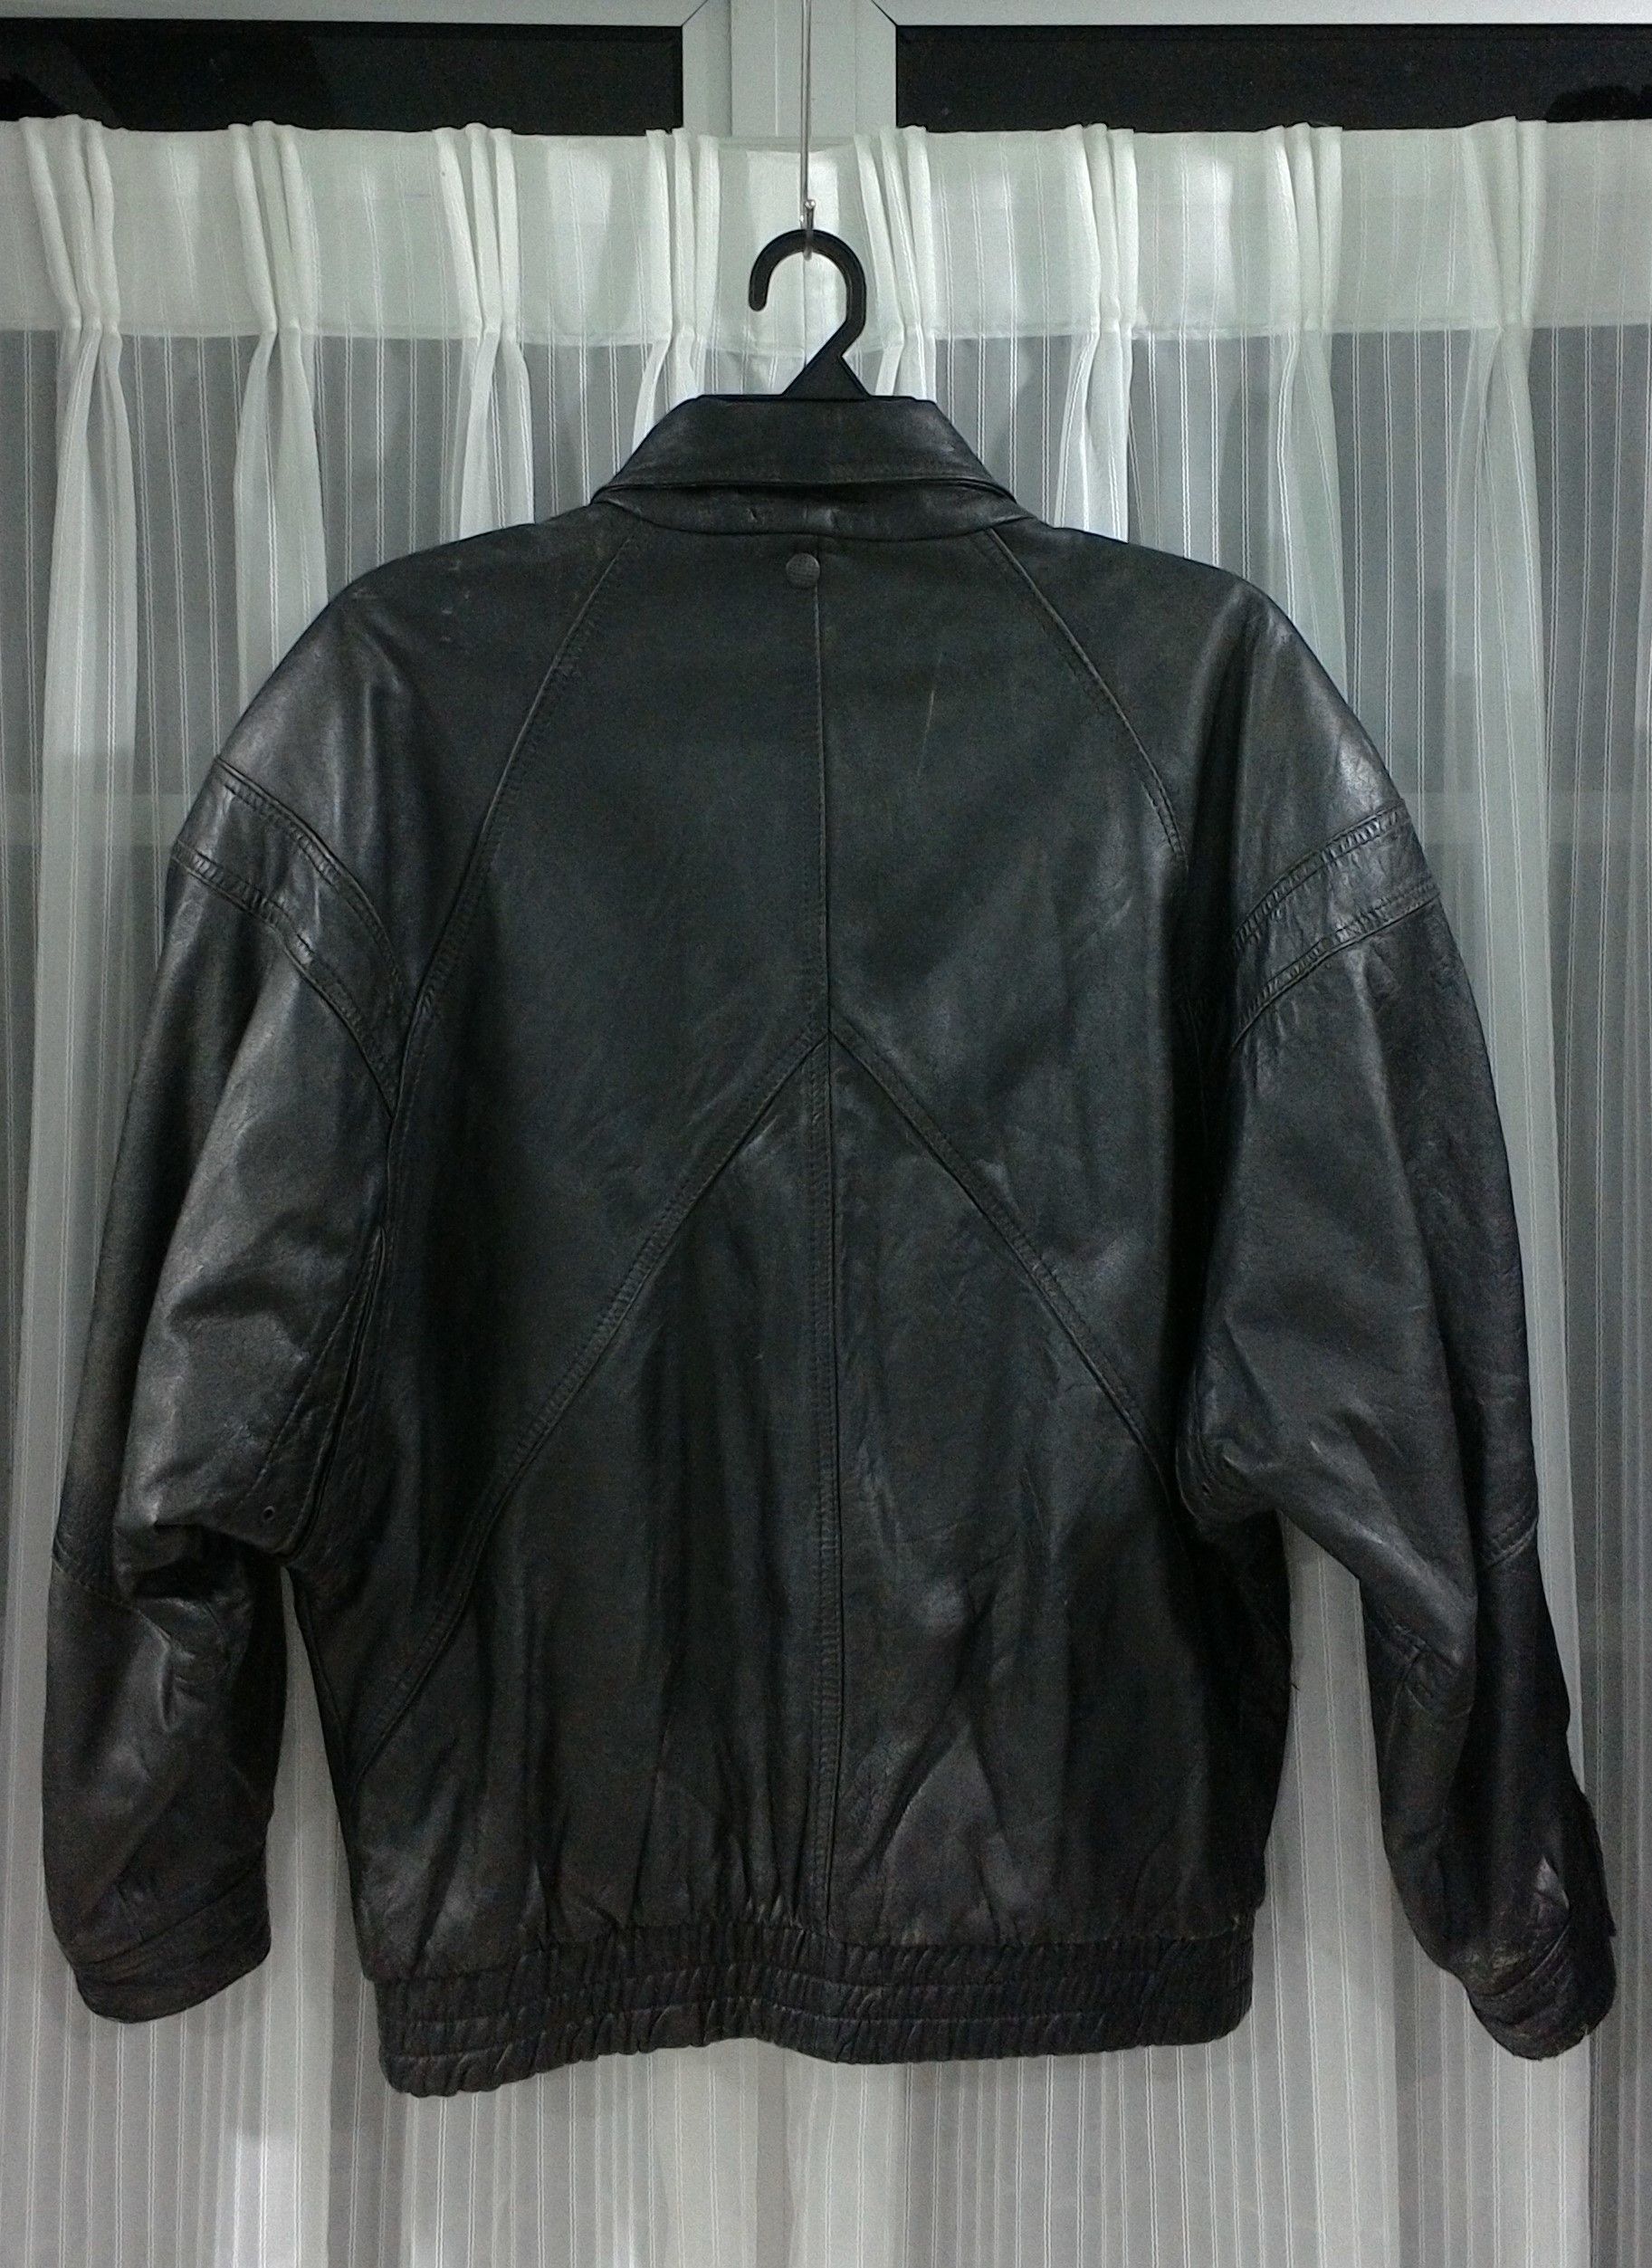 Vintage FIOCCHI Leather Jacket Size US L / EU 52-54 / 3 - 2 Preview